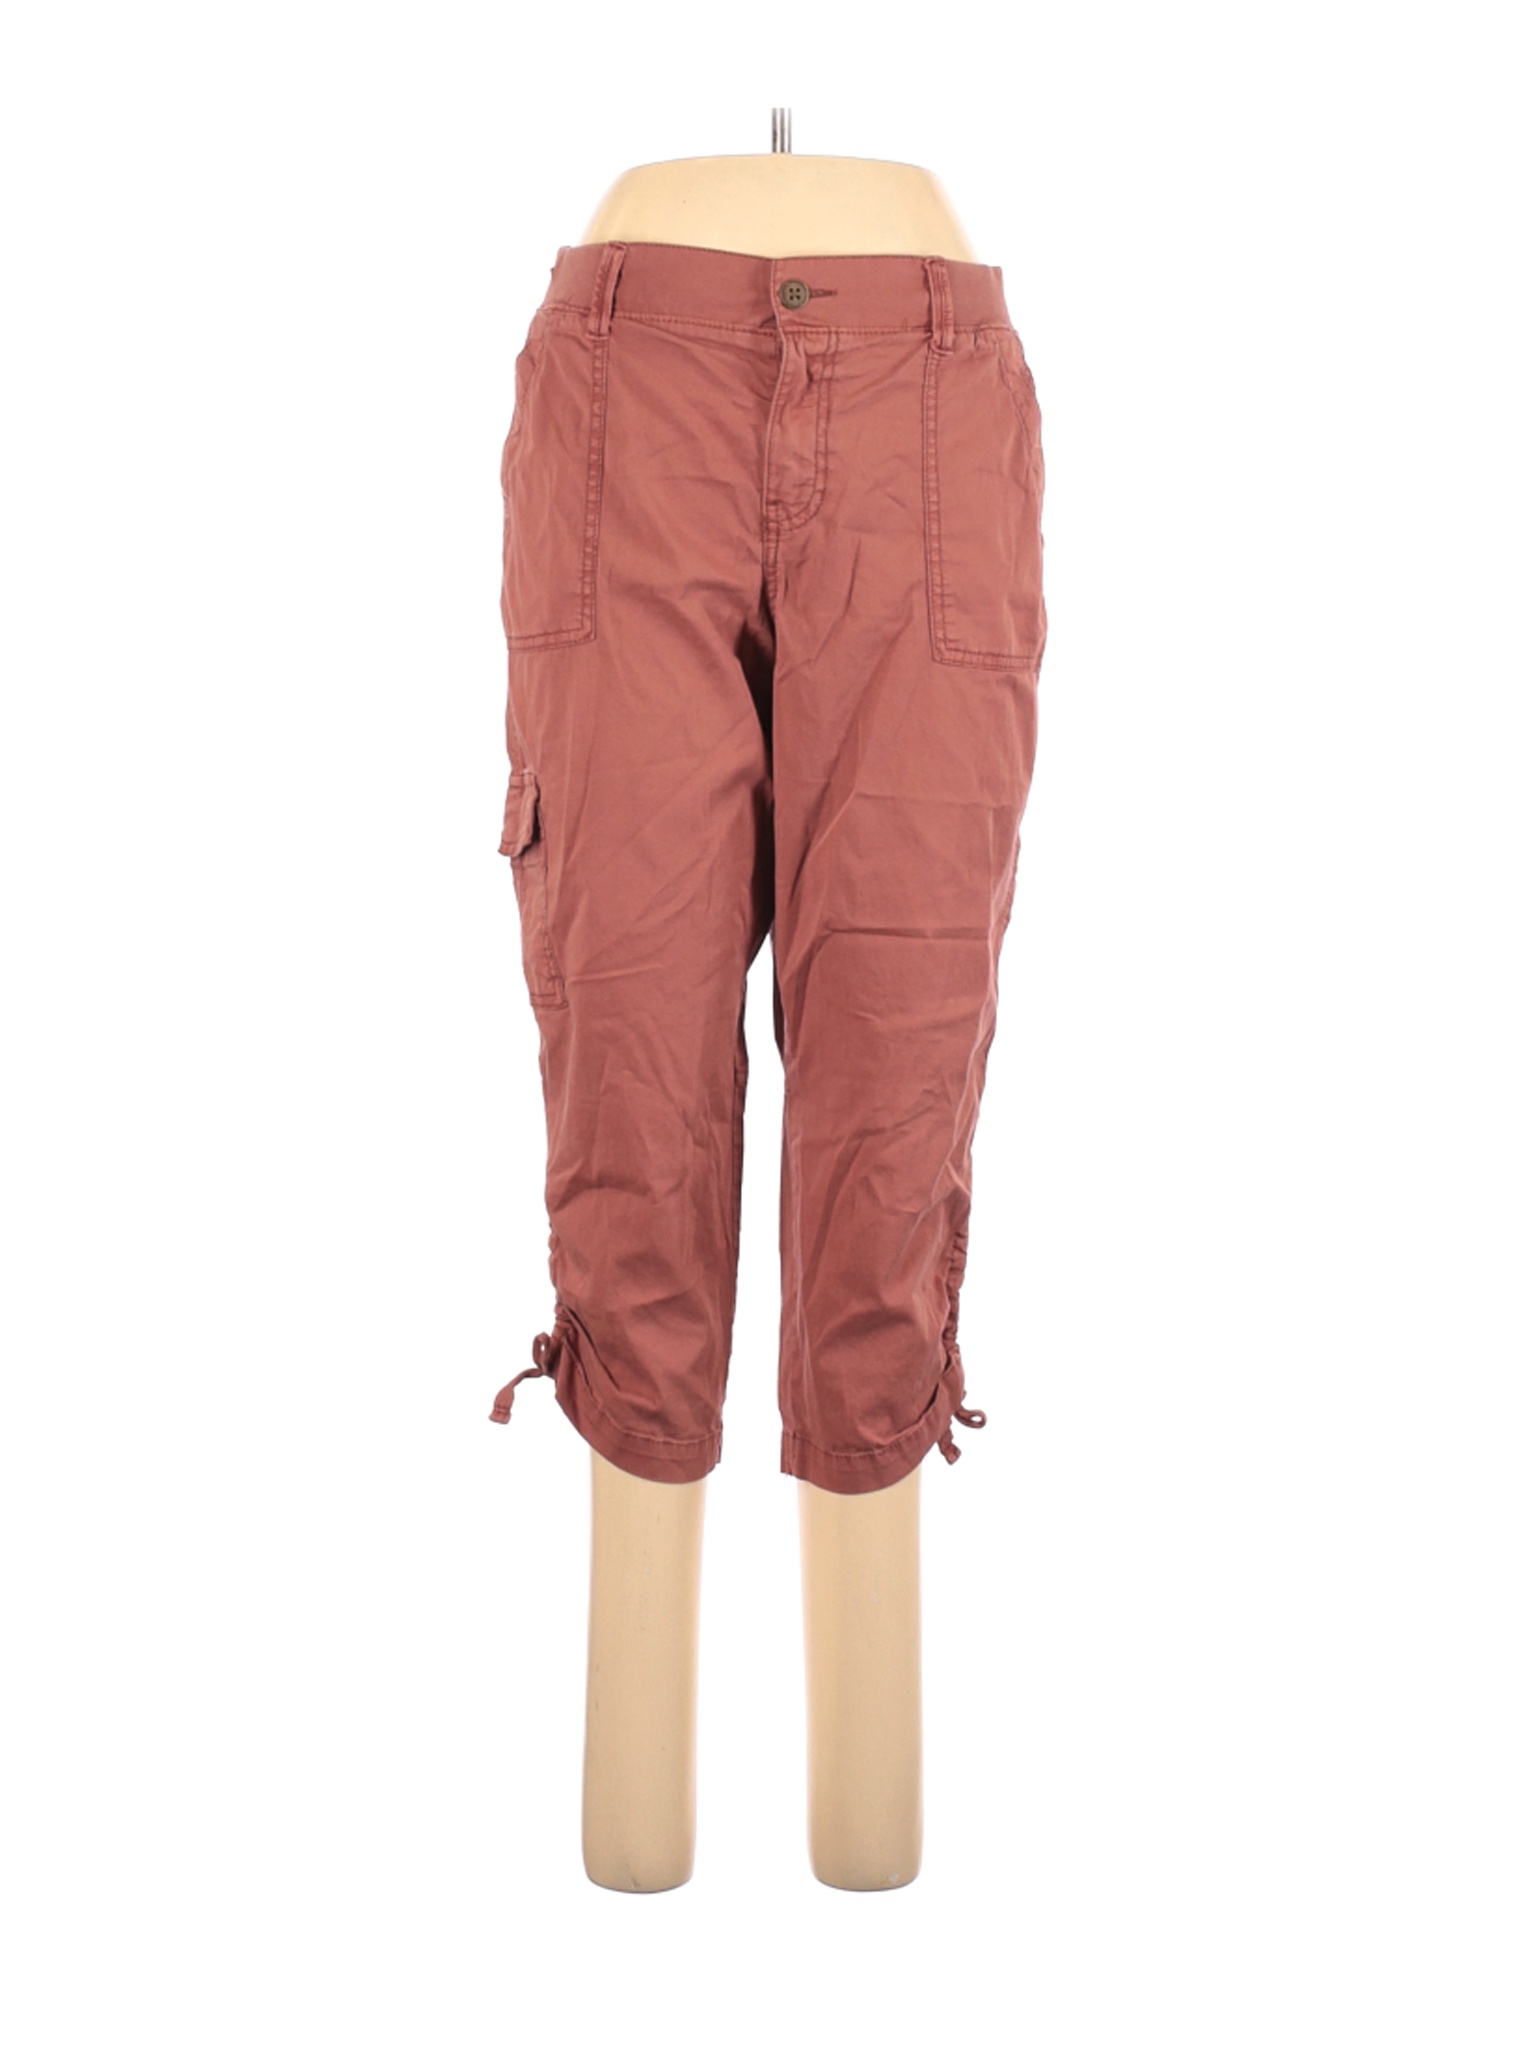 orange cargo pants womens